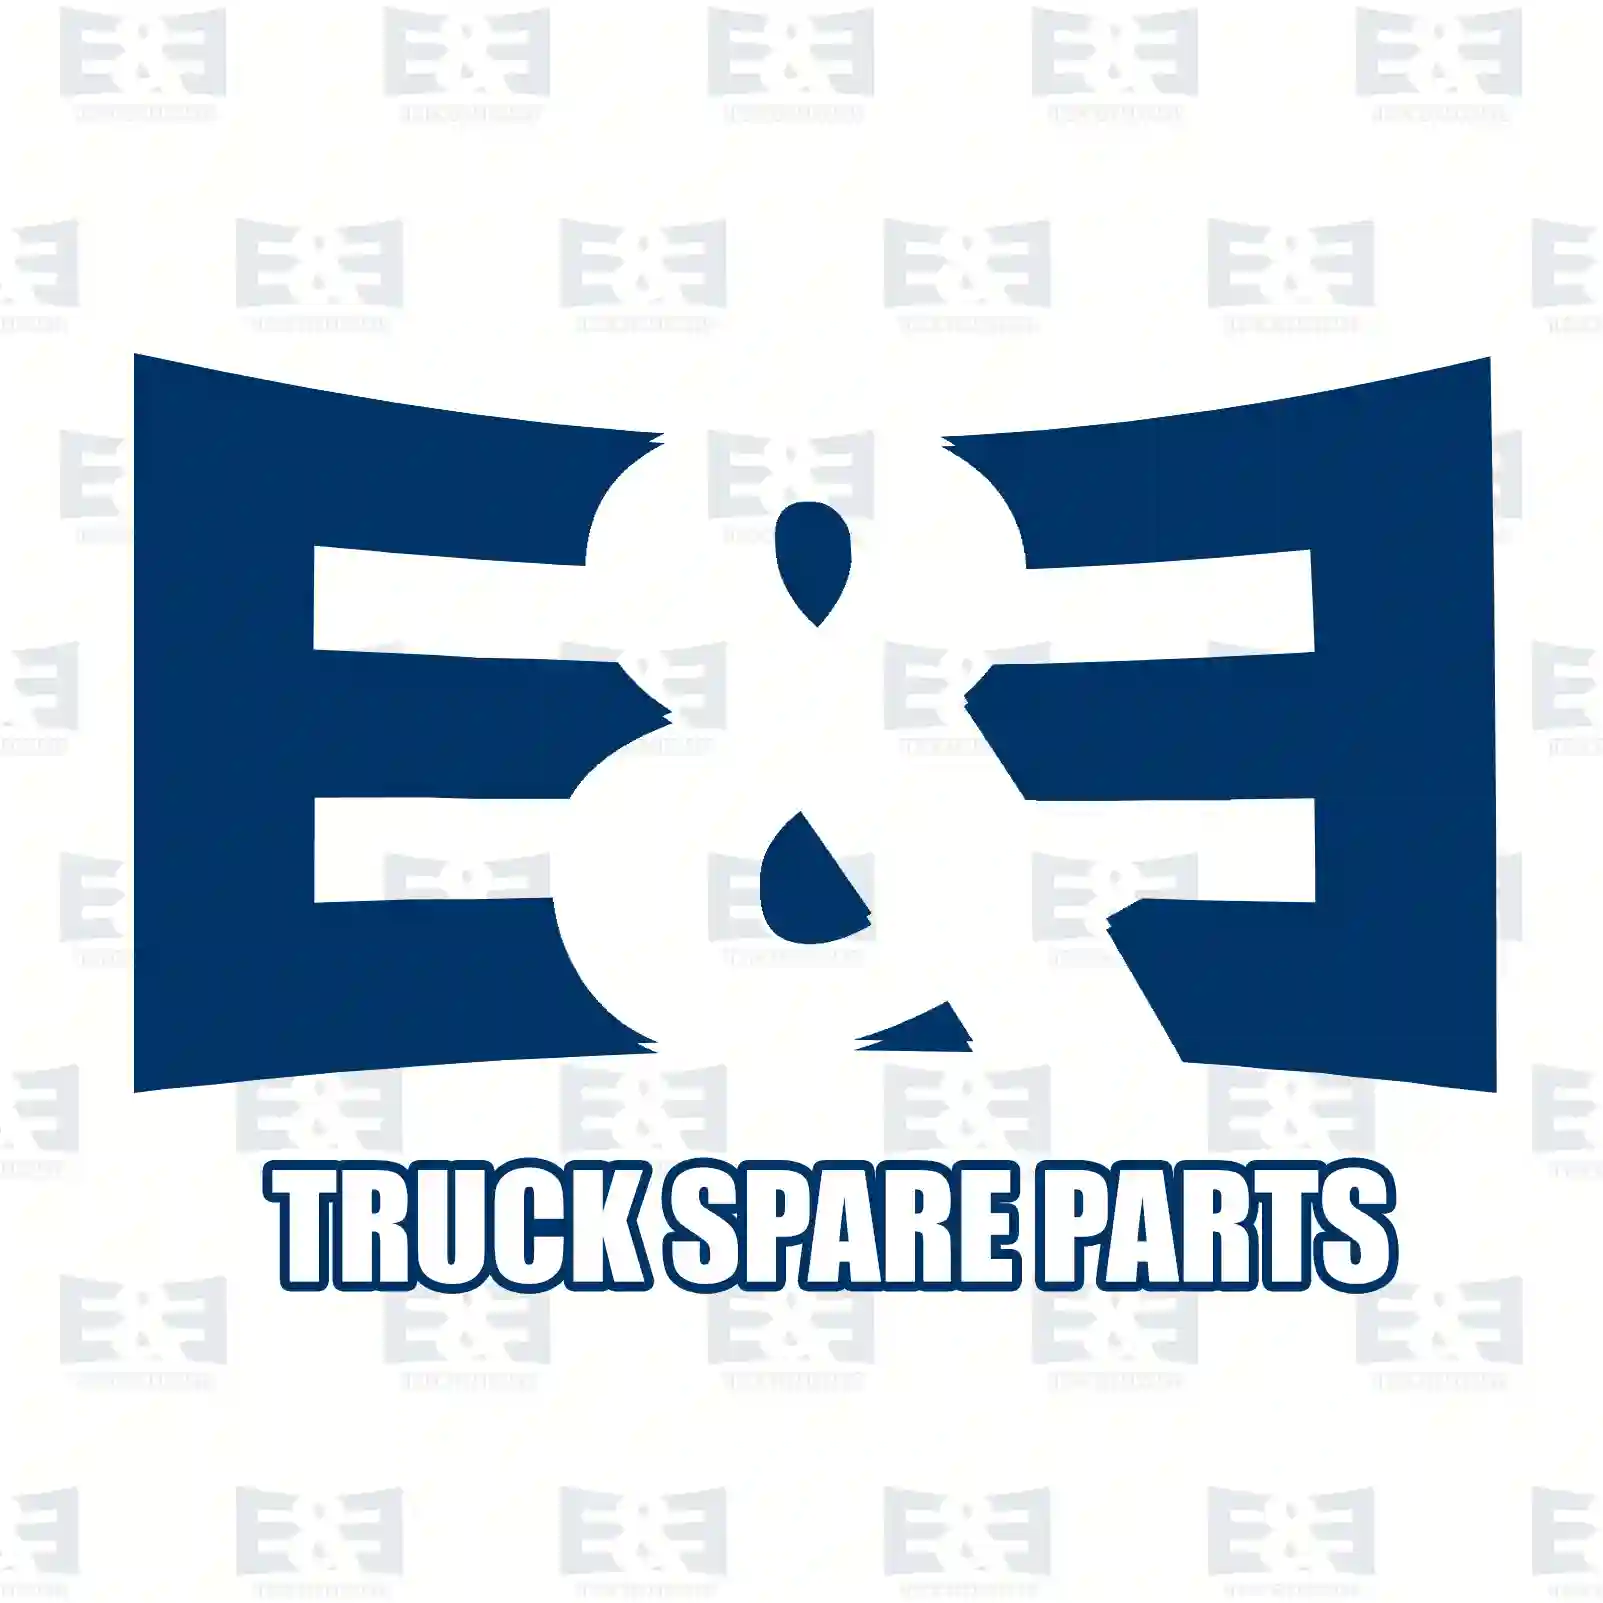 Brake camshaft, right, 2E2295765, 3054231236, 3054232036, , , ||  2E2295765 E&E Truck Spare Parts | Truck Spare Parts, Auotomotive Spare Parts Brake camshaft, right, 2E2295765, 3054231236, 3054232036, , , ||  2E2295765 E&E Truck Spare Parts | Truck Spare Parts, Auotomotive Spare Parts